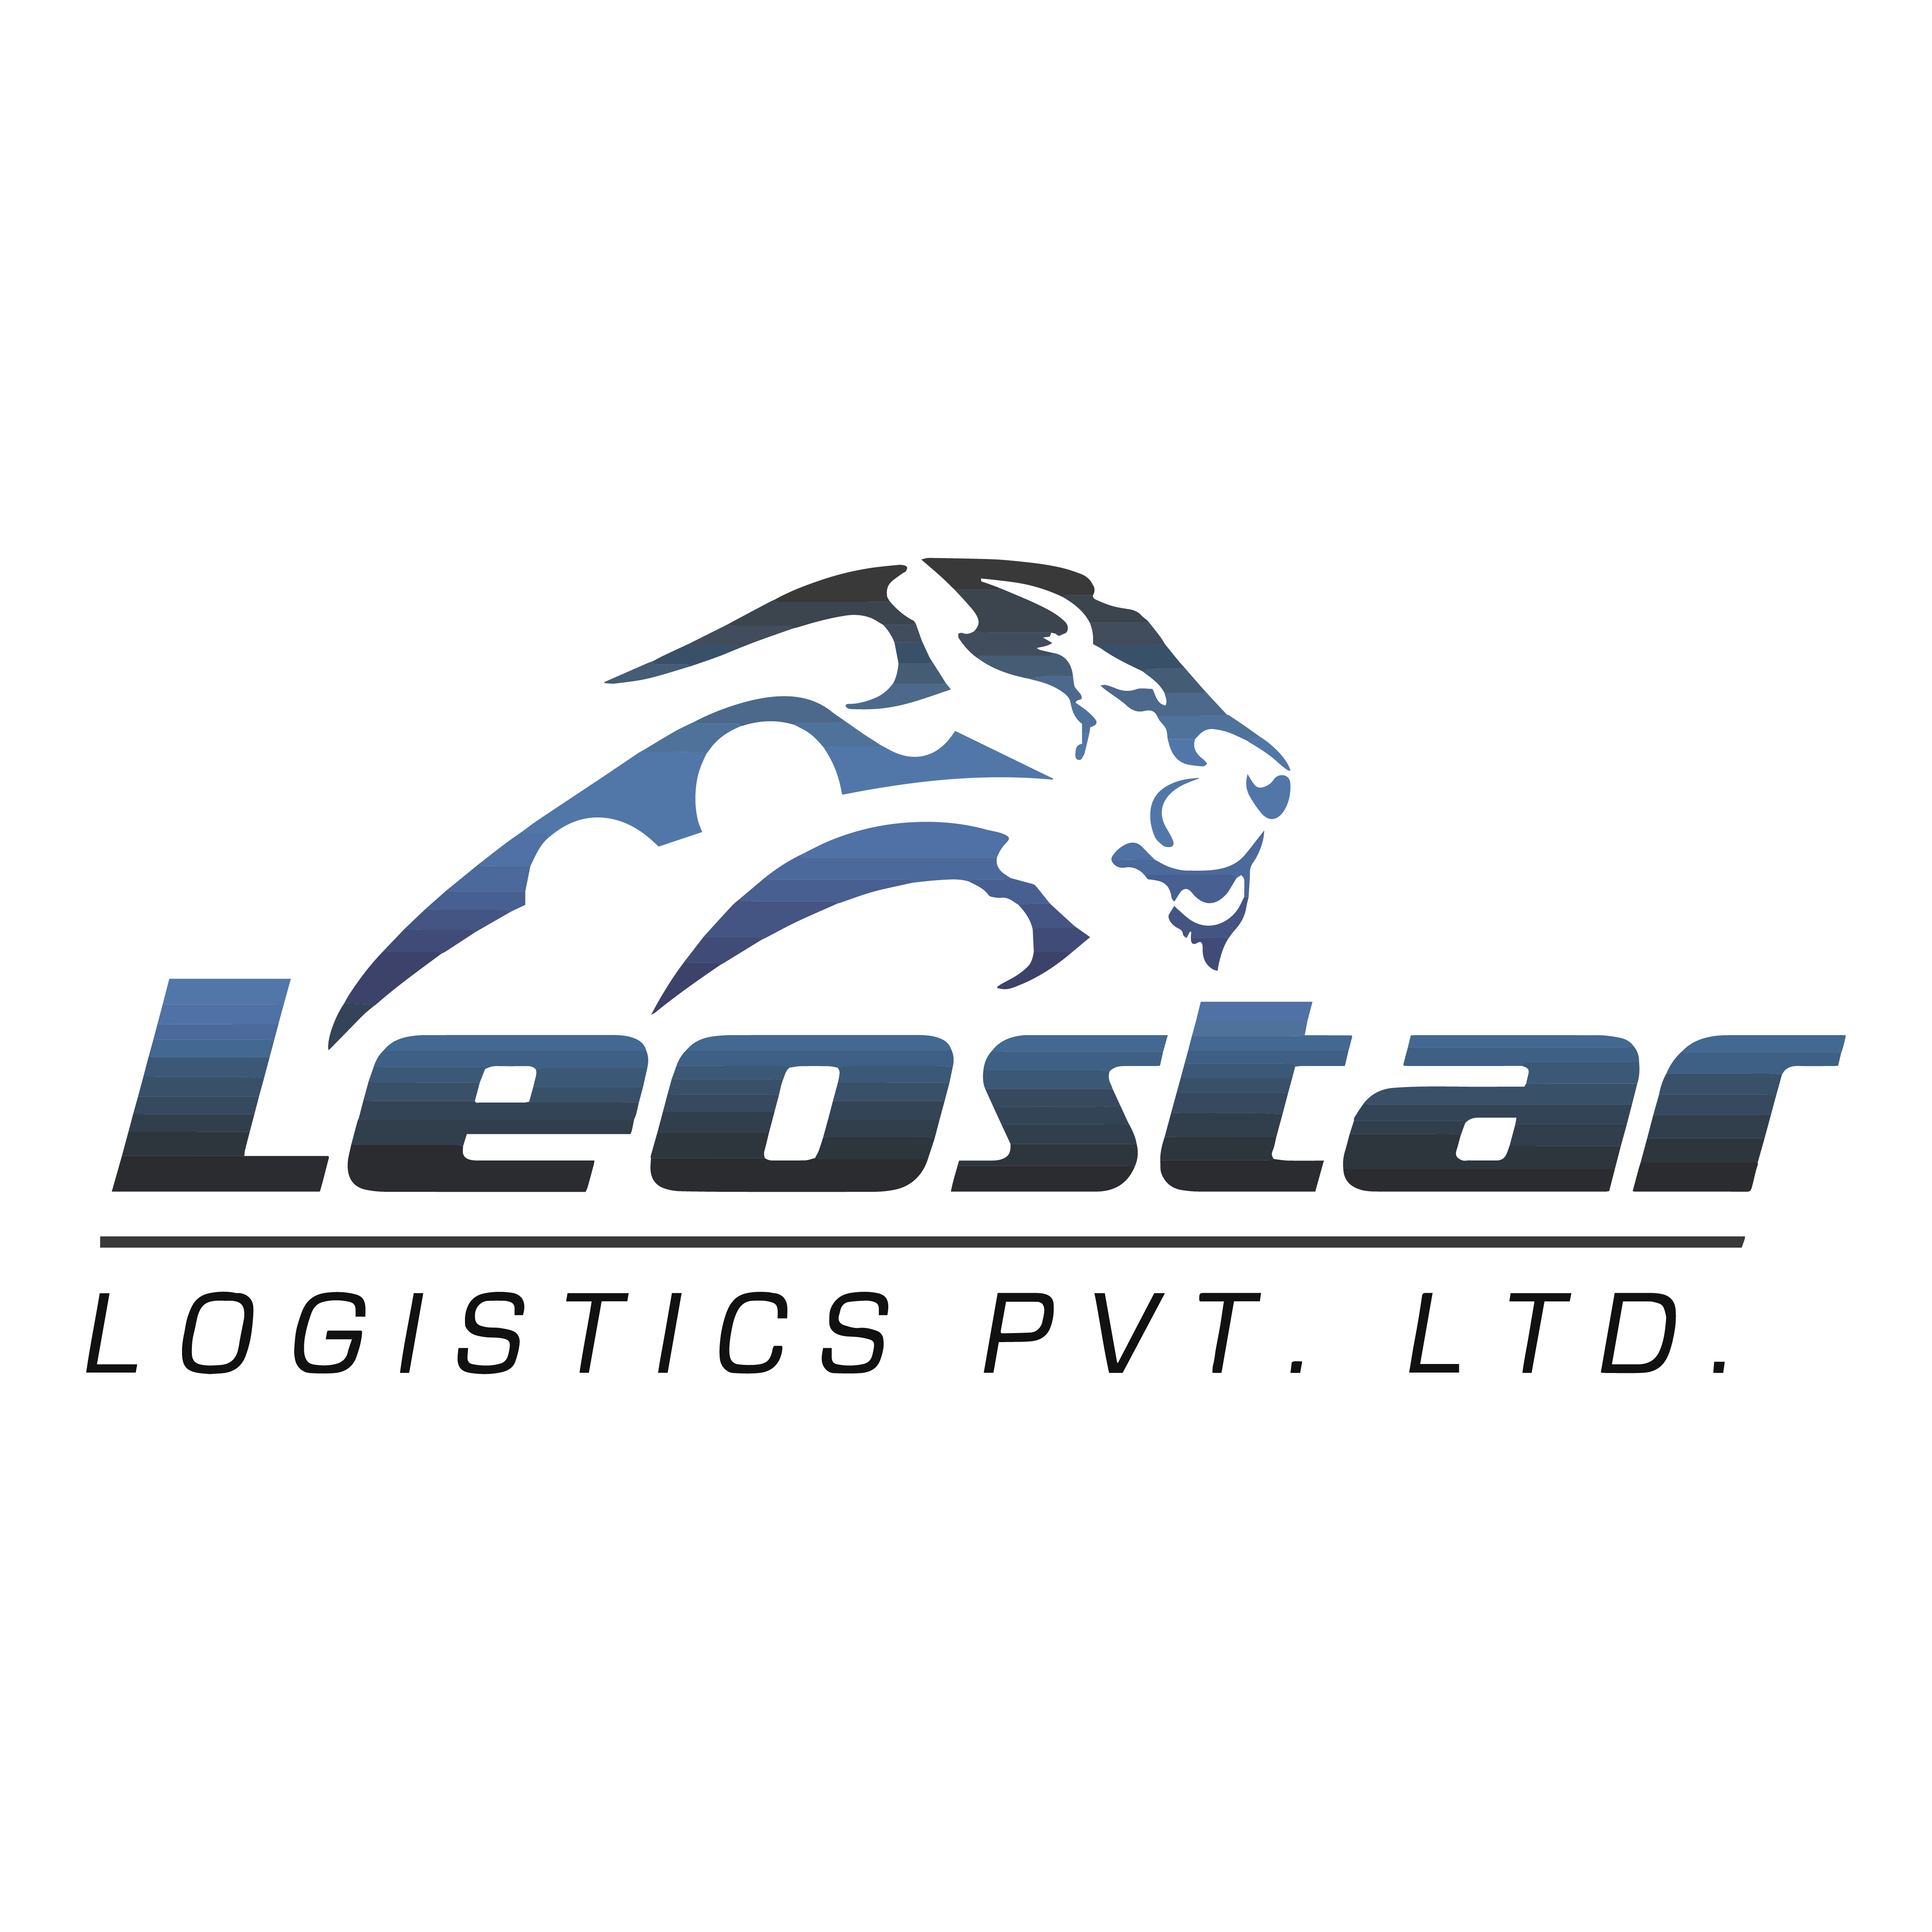 LEOSTAR LOGISTICS PVT. LTD.